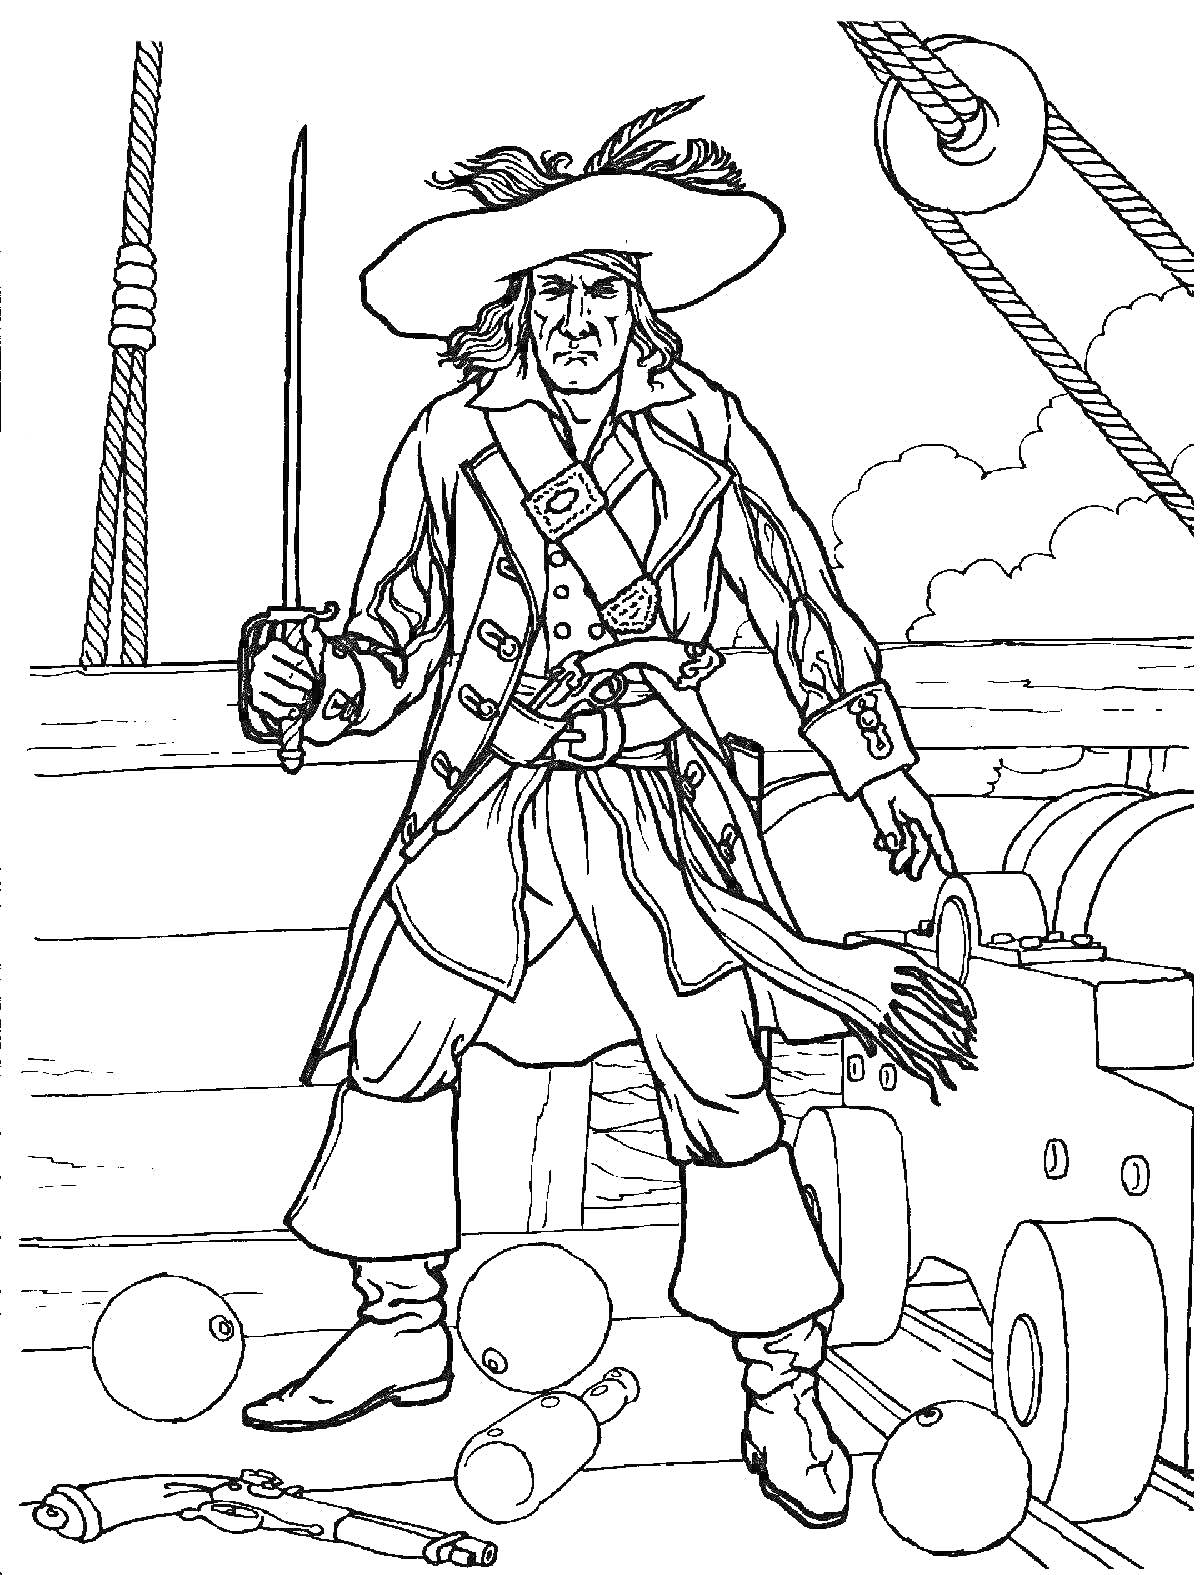 Раскраска Пират с мечом на палубе корабля, пушки и ядра